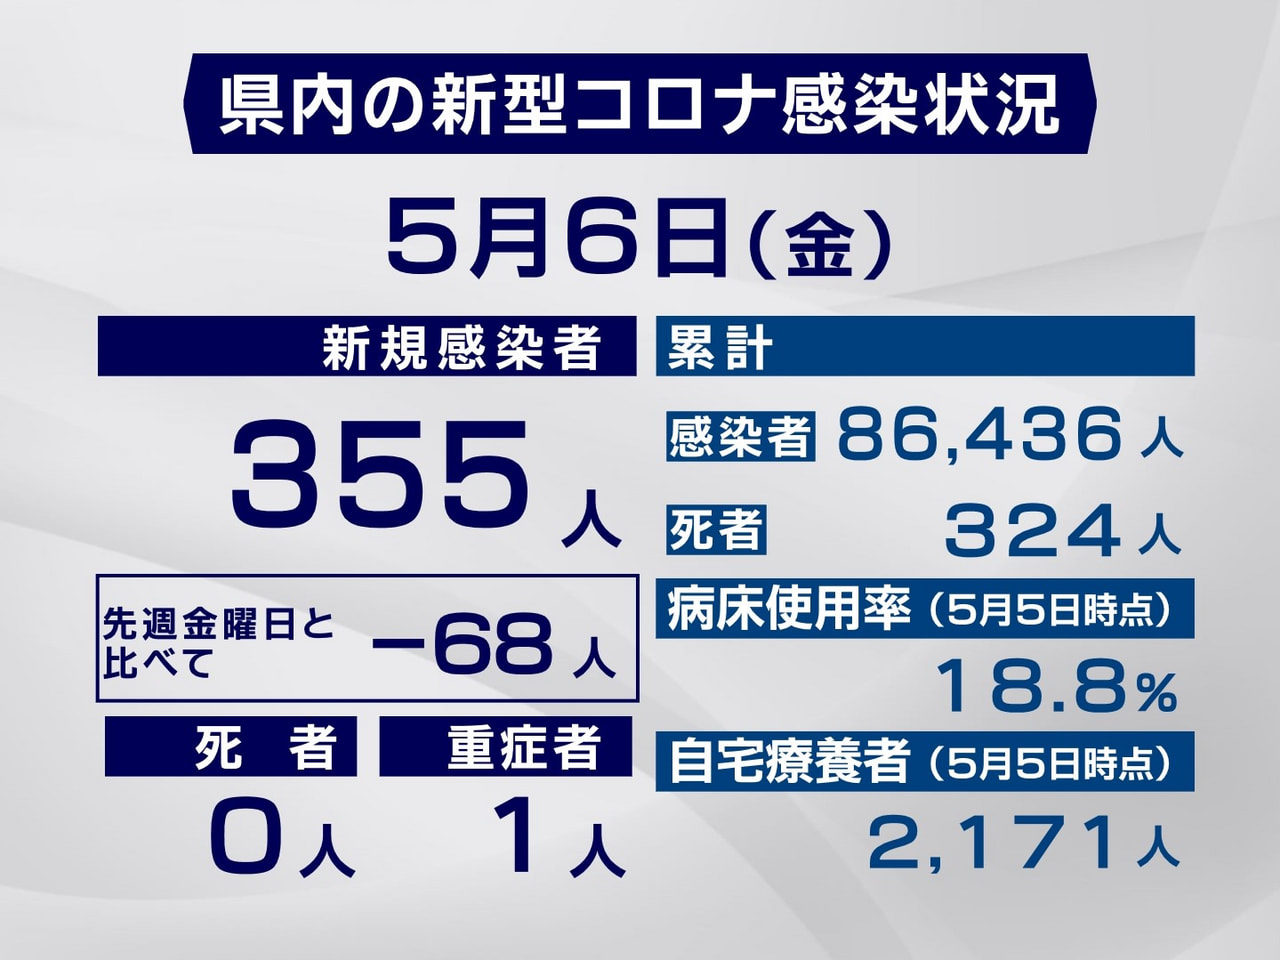 岐阜県は６日、新型コロナウイルスの新規感染者が３５５人確認されたと発表しました。...